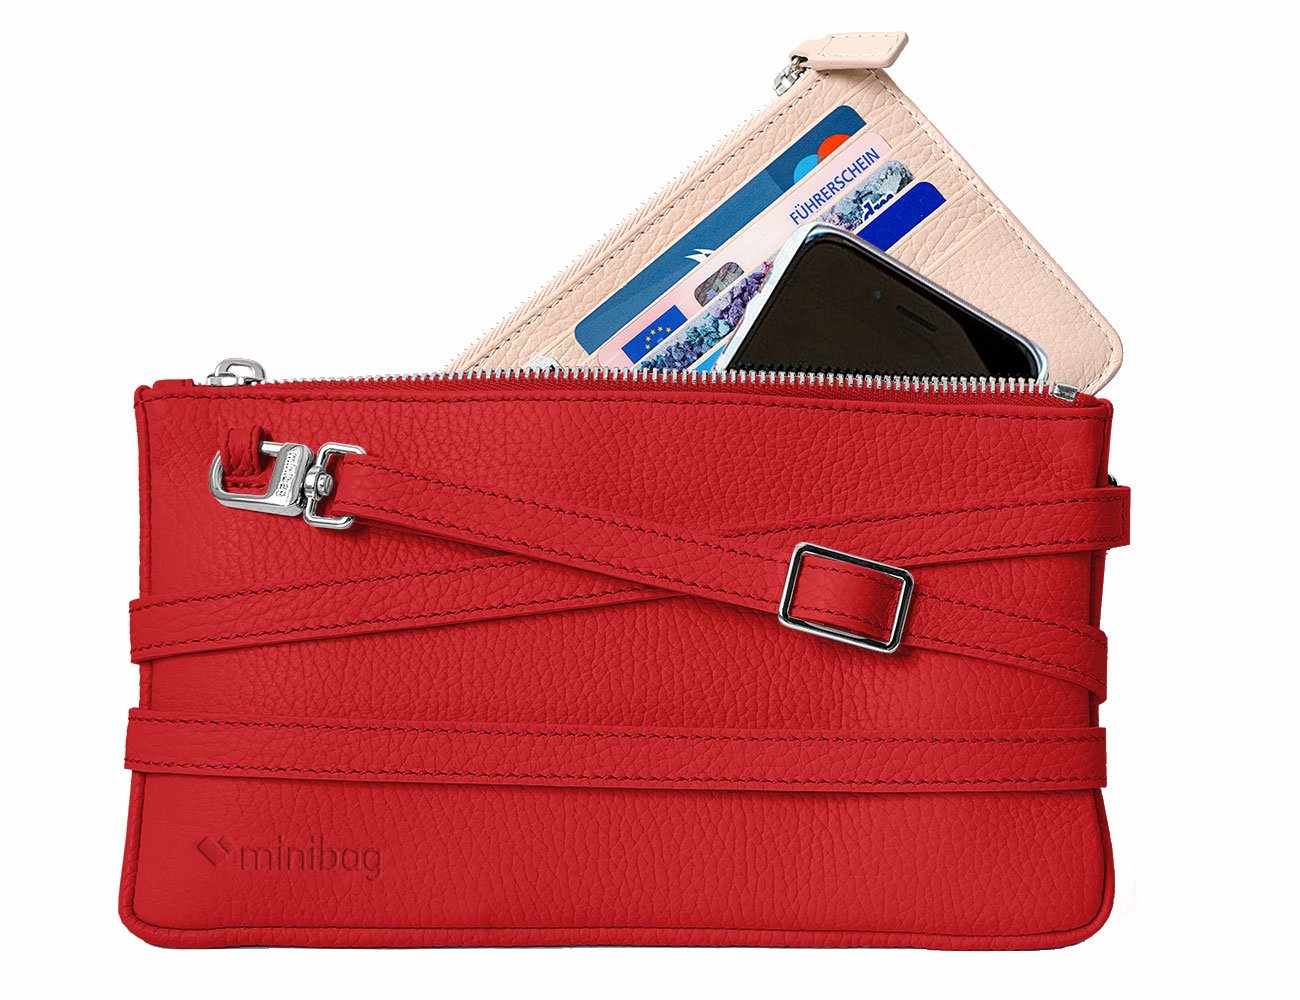 minibag red, Ledertasche rot, Clutch rot, minibag Wallet nude, Geldtasche zum Umhängen, minibag rot